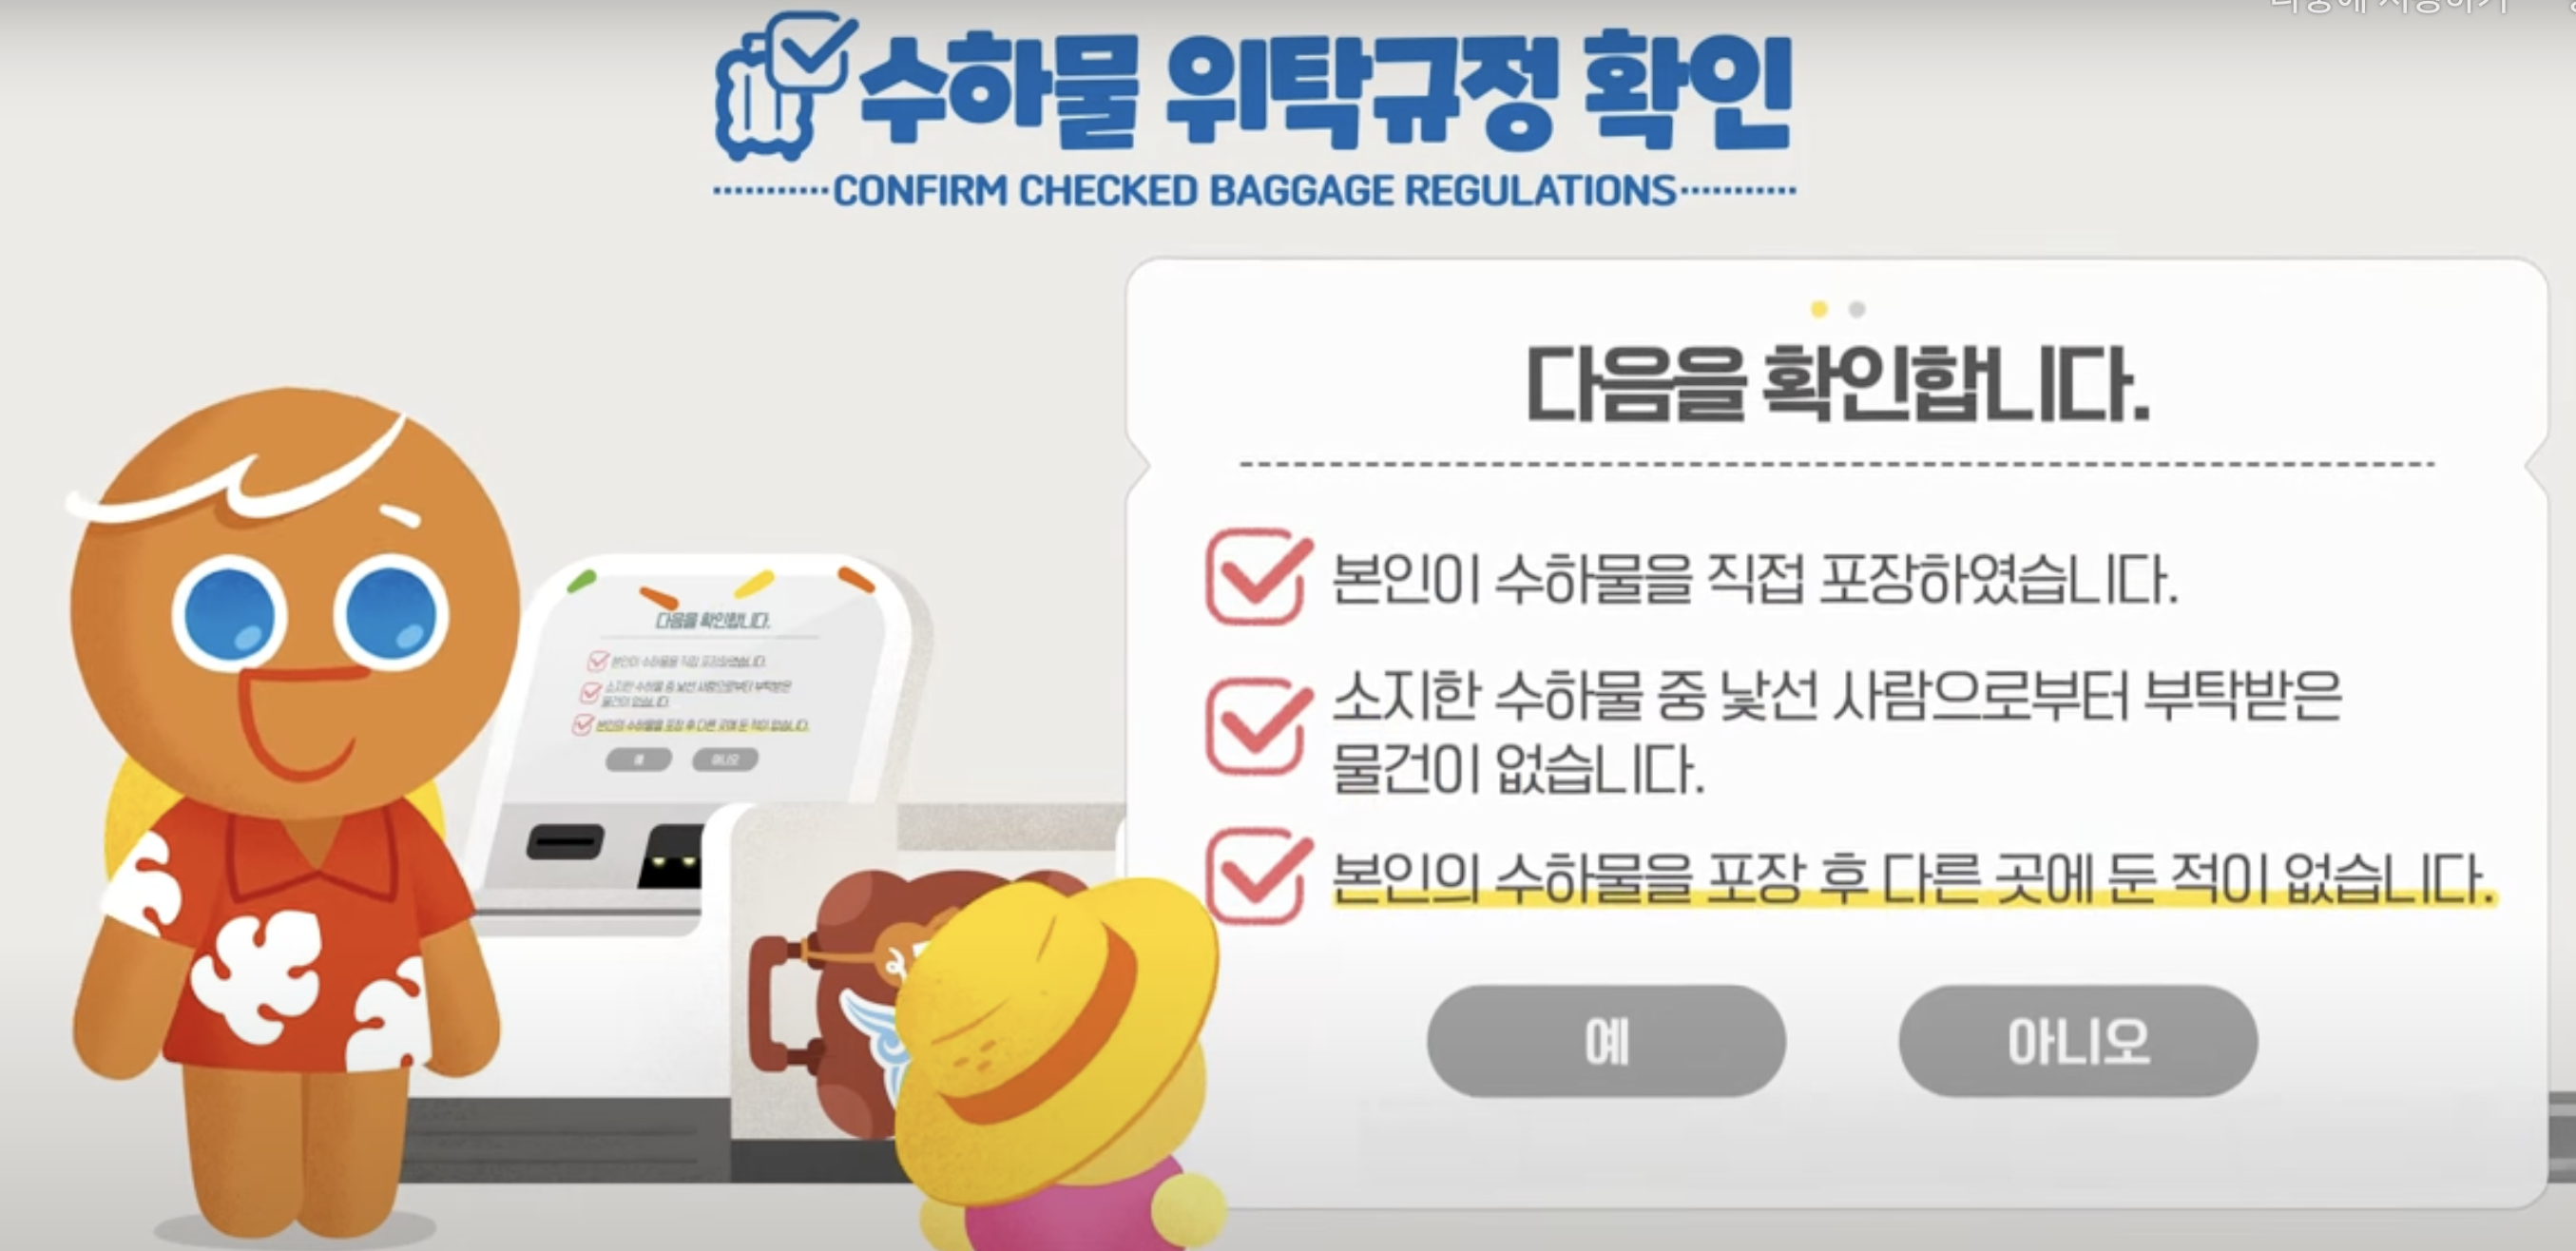 티웨이항공 셀프백드랍 이용 방법 3 수하물 위탁규정 확인